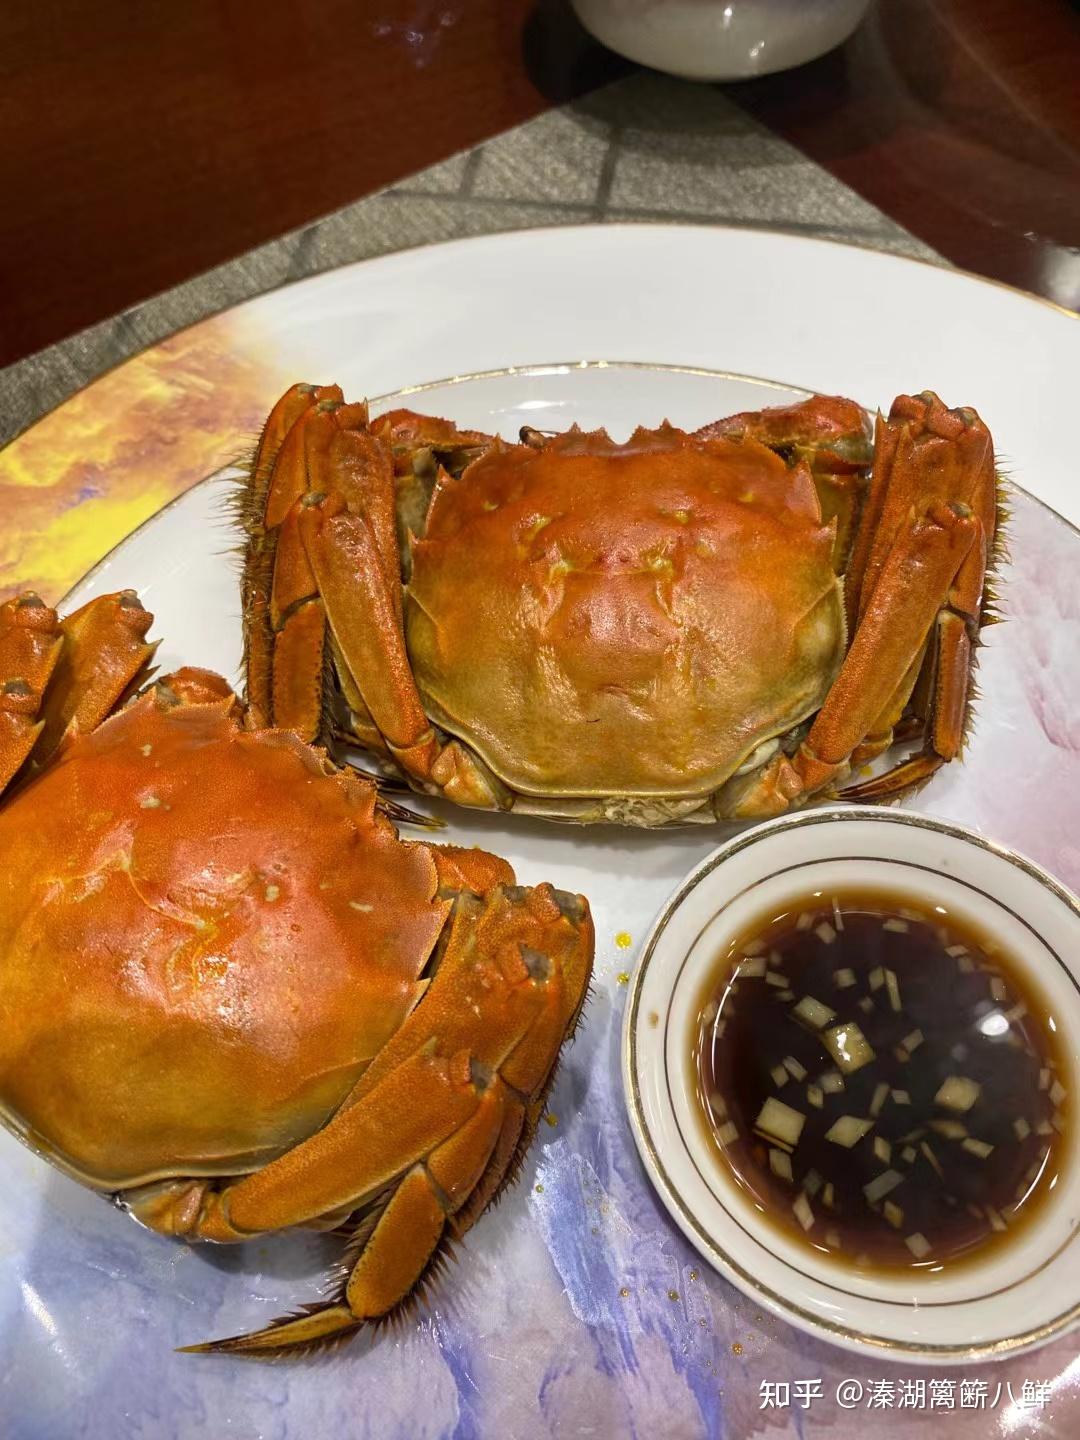 2019年高淳固城湖螃蟹节将于9月21日在固城湖水慢城开幕 - 蟹如虎固城湖大闸蟹